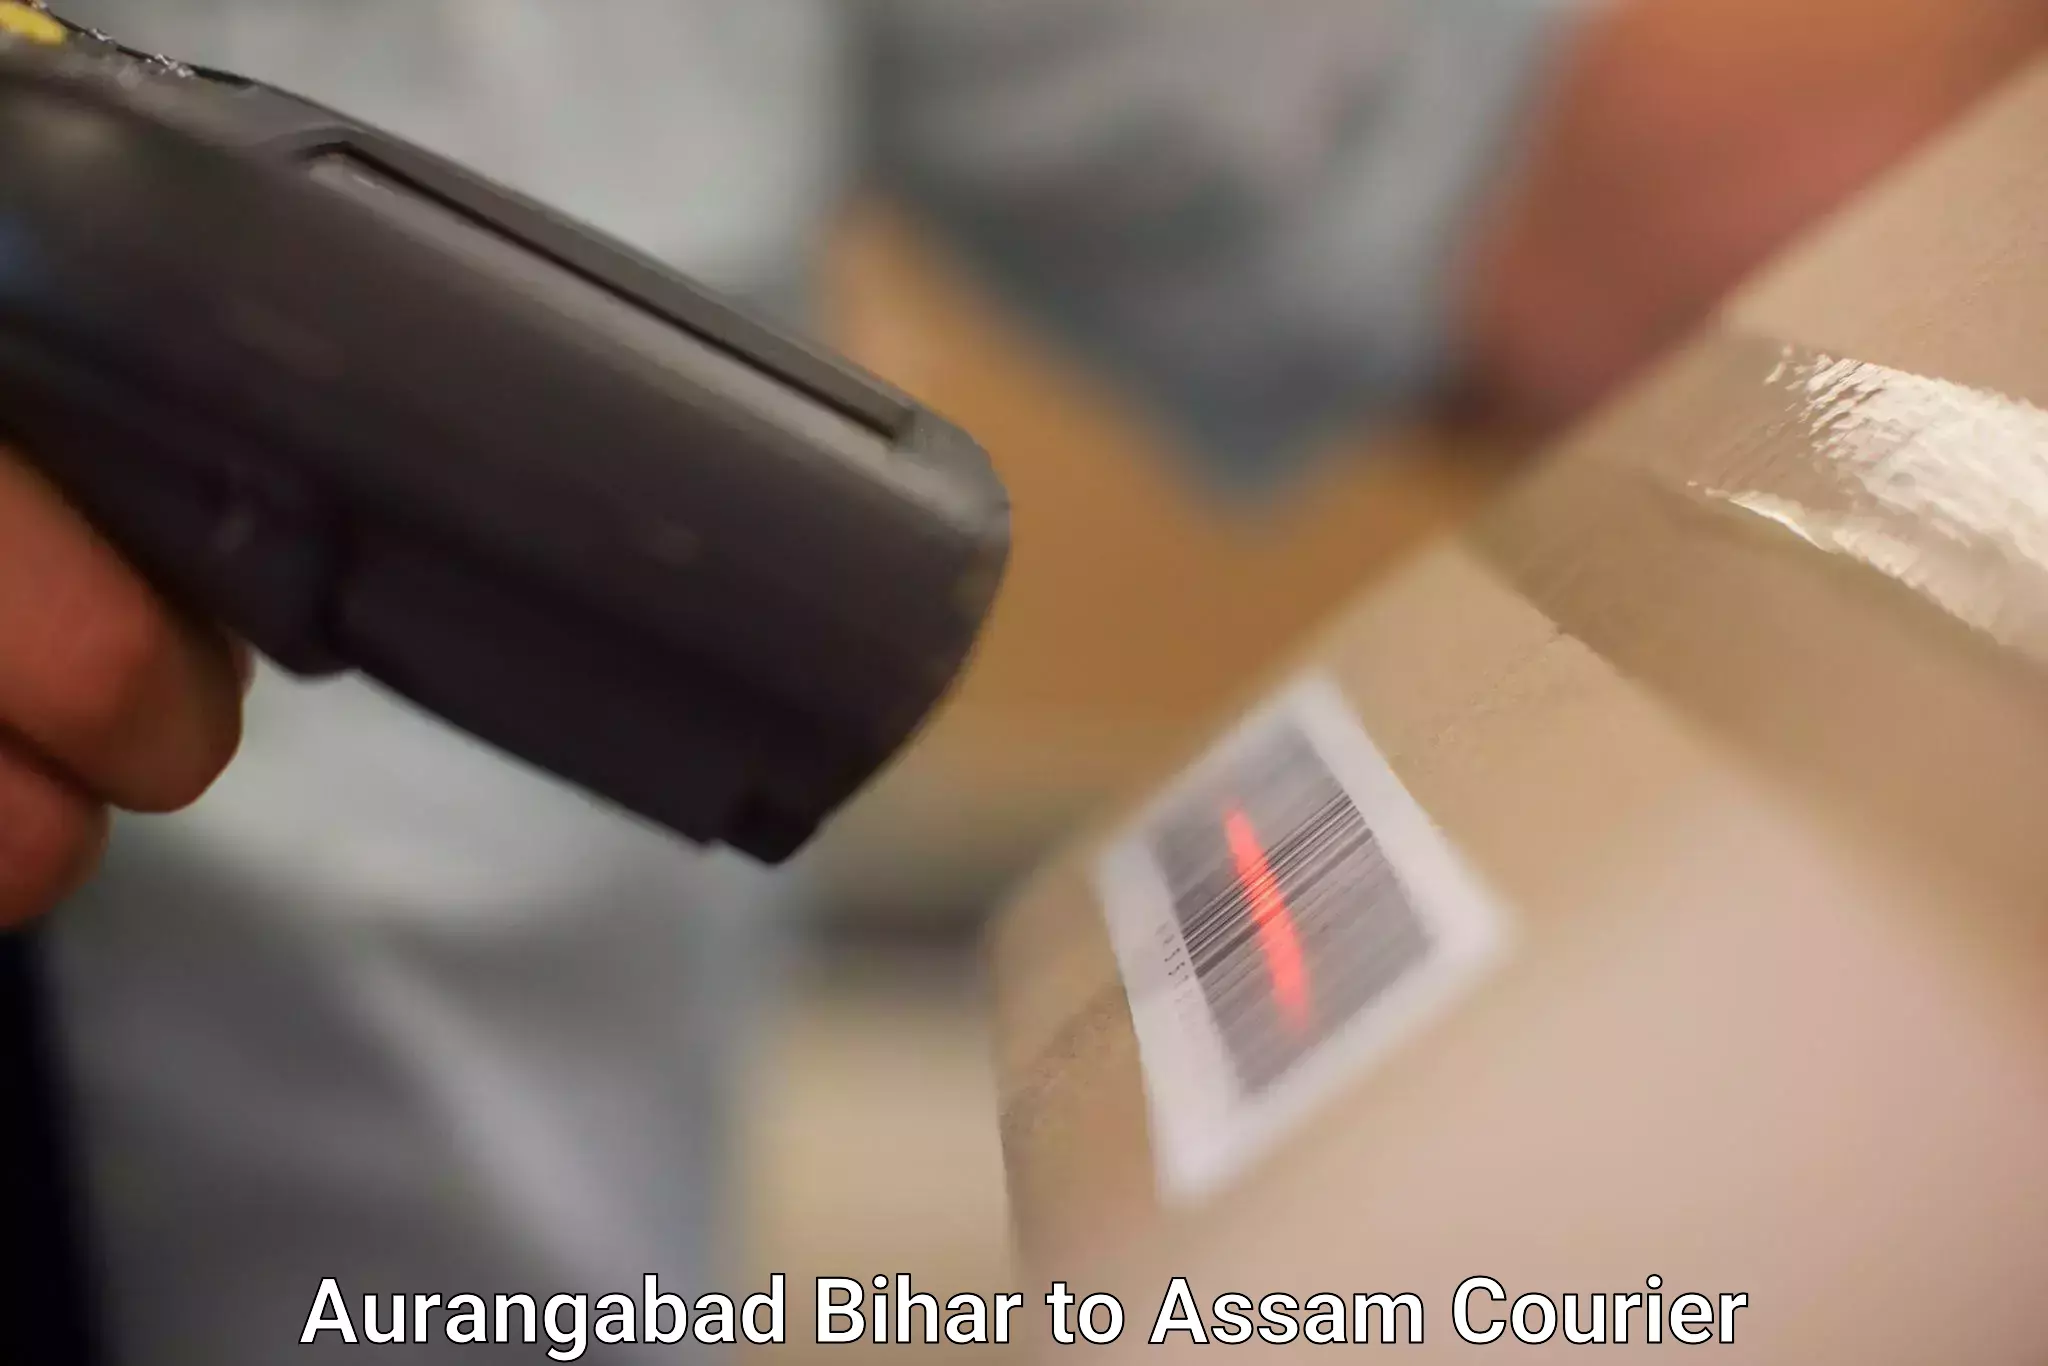 Courier service efficiency Aurangabad Bihar to Teok